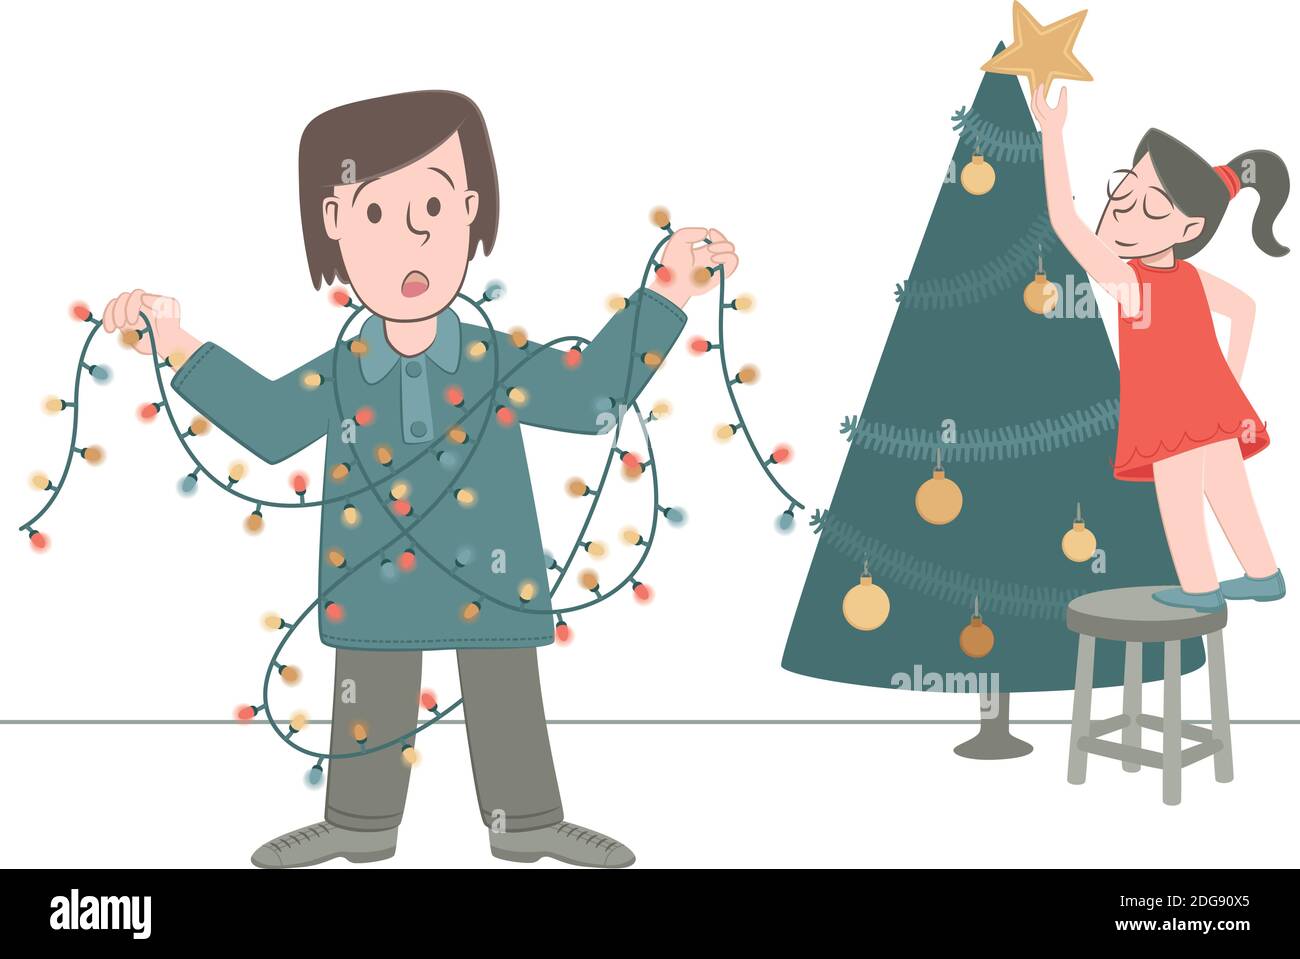 Retro-Stil Illustration eines Jungen, der in Weihnachtsbeleuchtung verwickelt wurde, als er den Weihnachtsbaum mit seiner Schwester dekorierte Stock Vektor